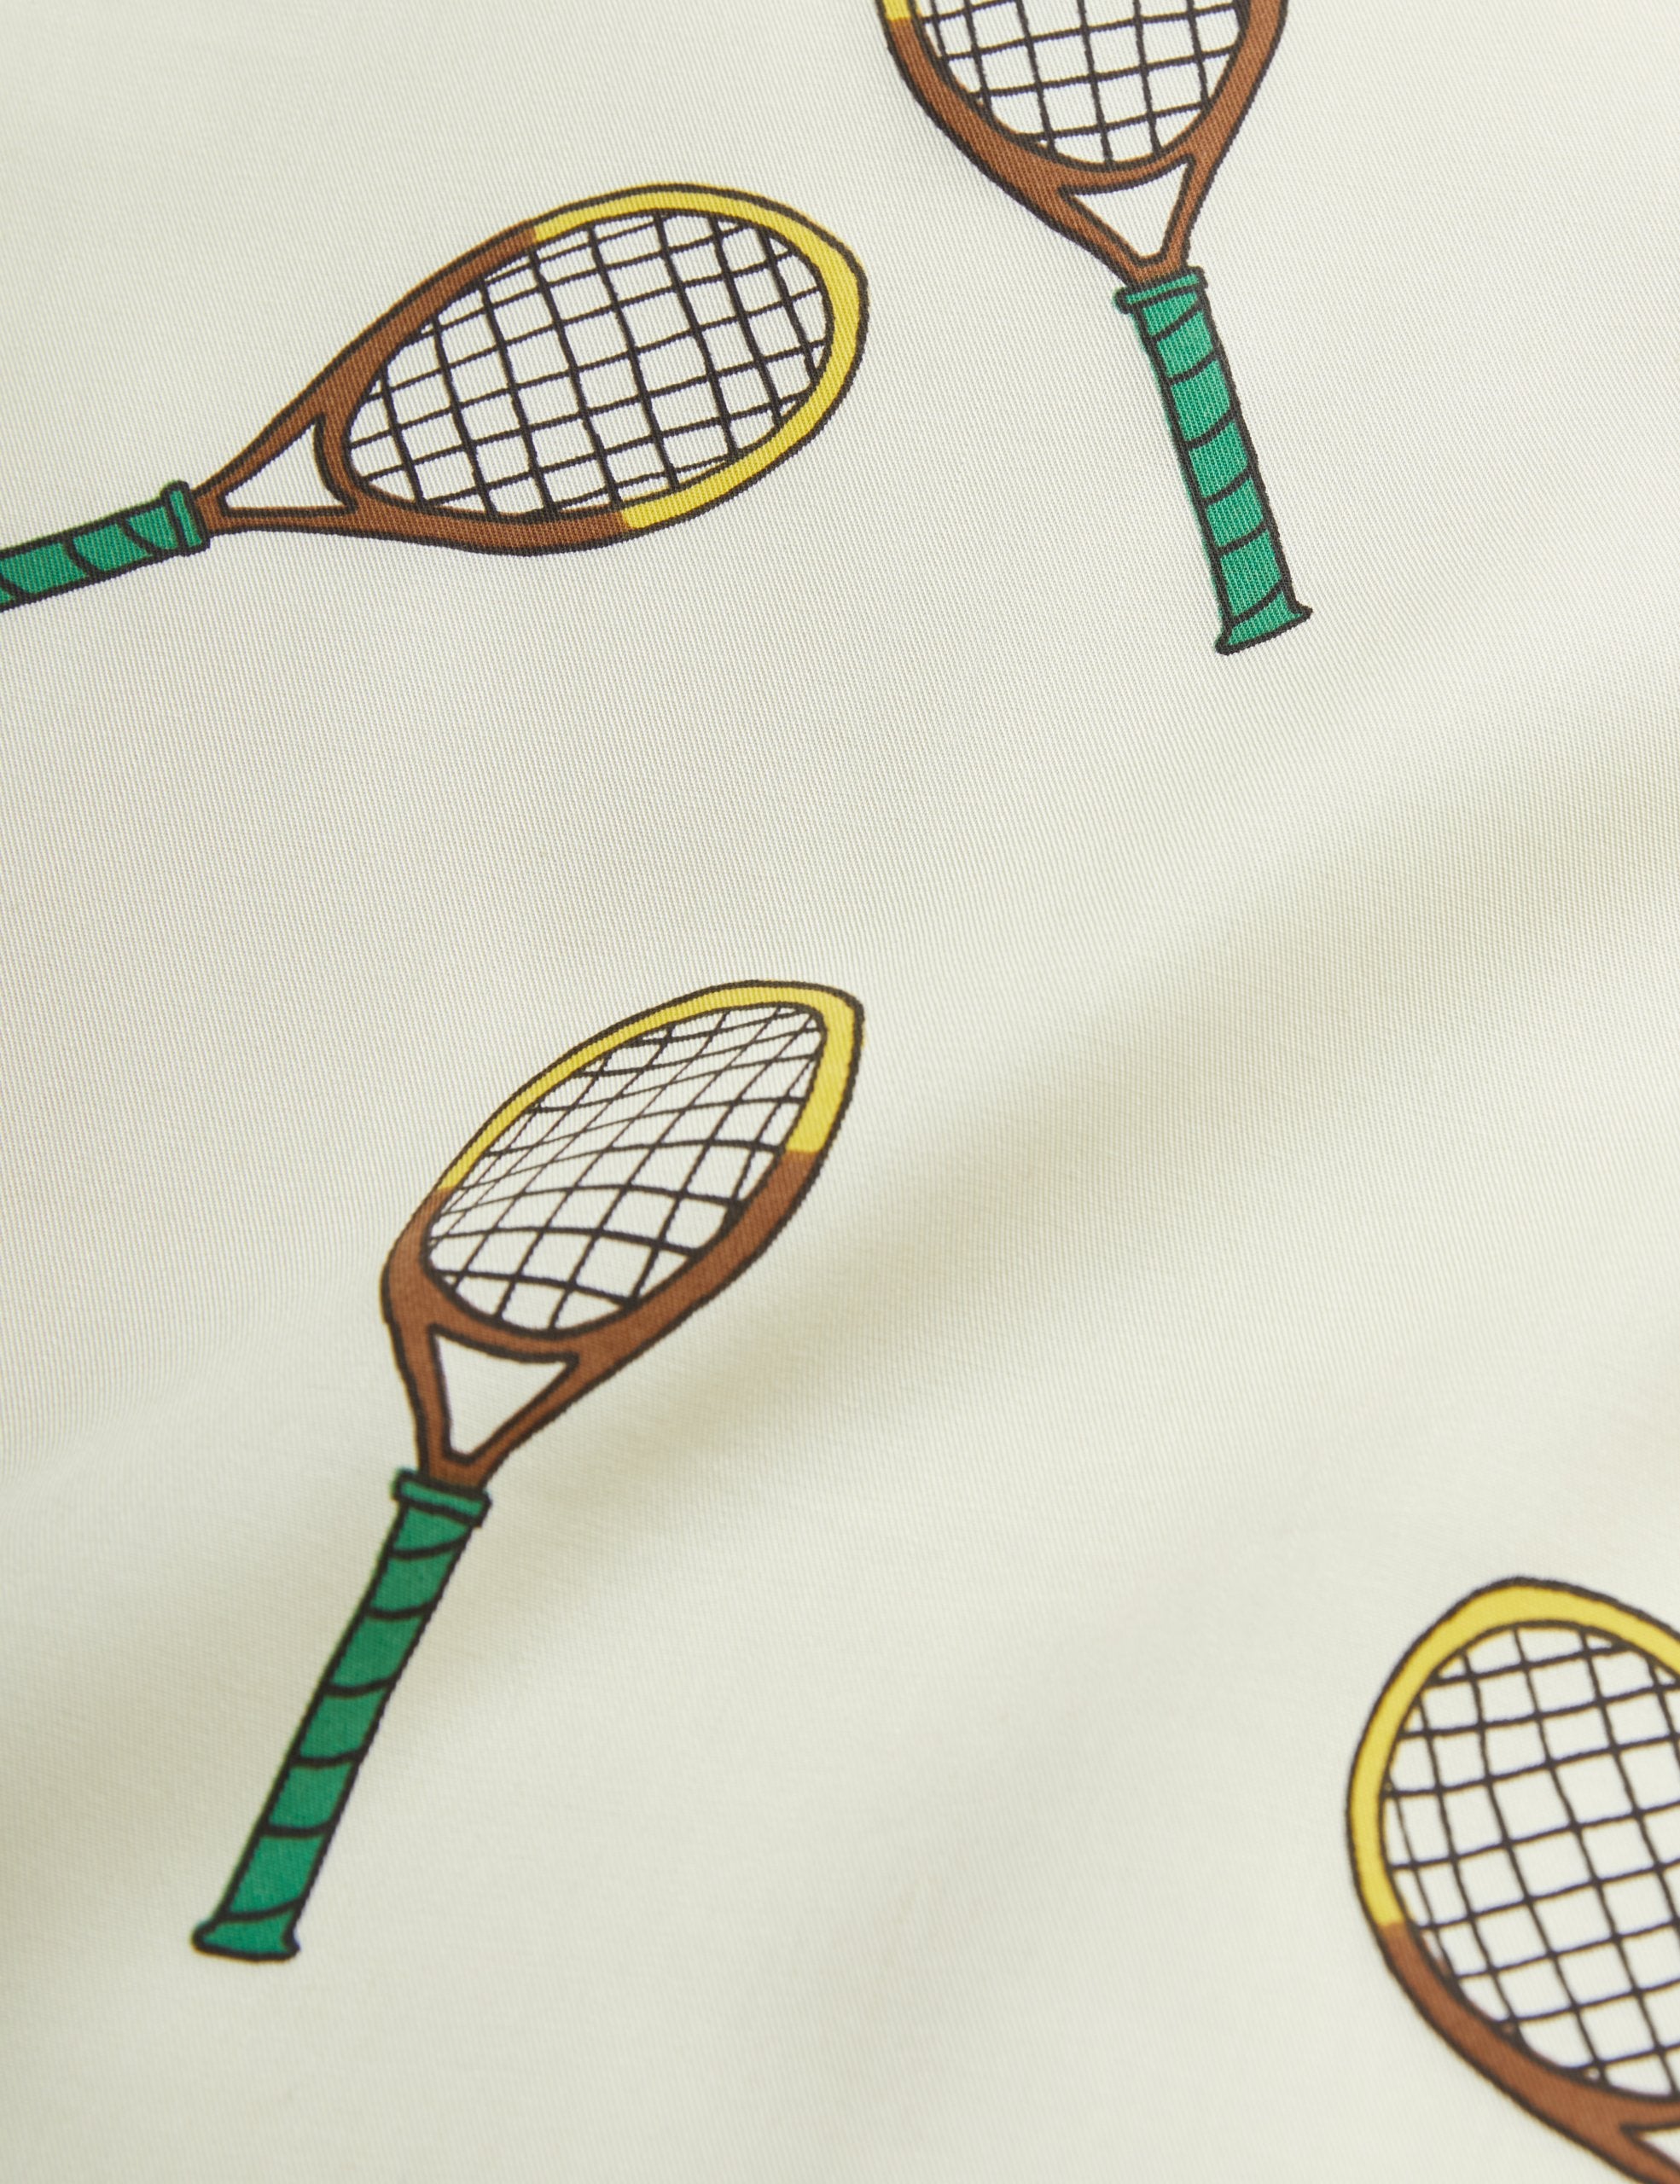 Mini Rodini | Tennis aop woven shorts